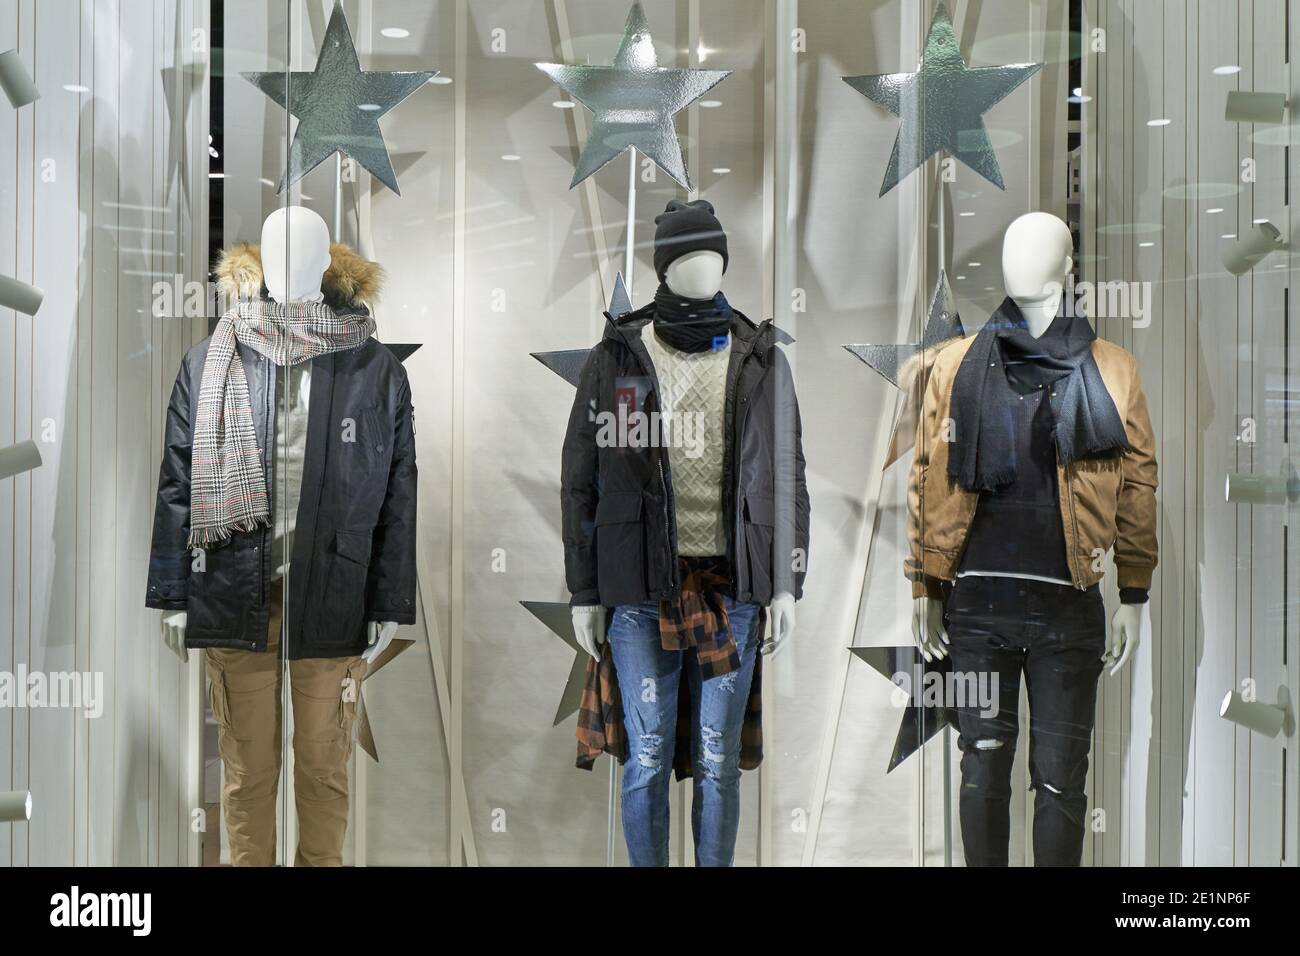 Maniquíes en invierno ropa exterior masculina en una ventana de tienda Foto de stock